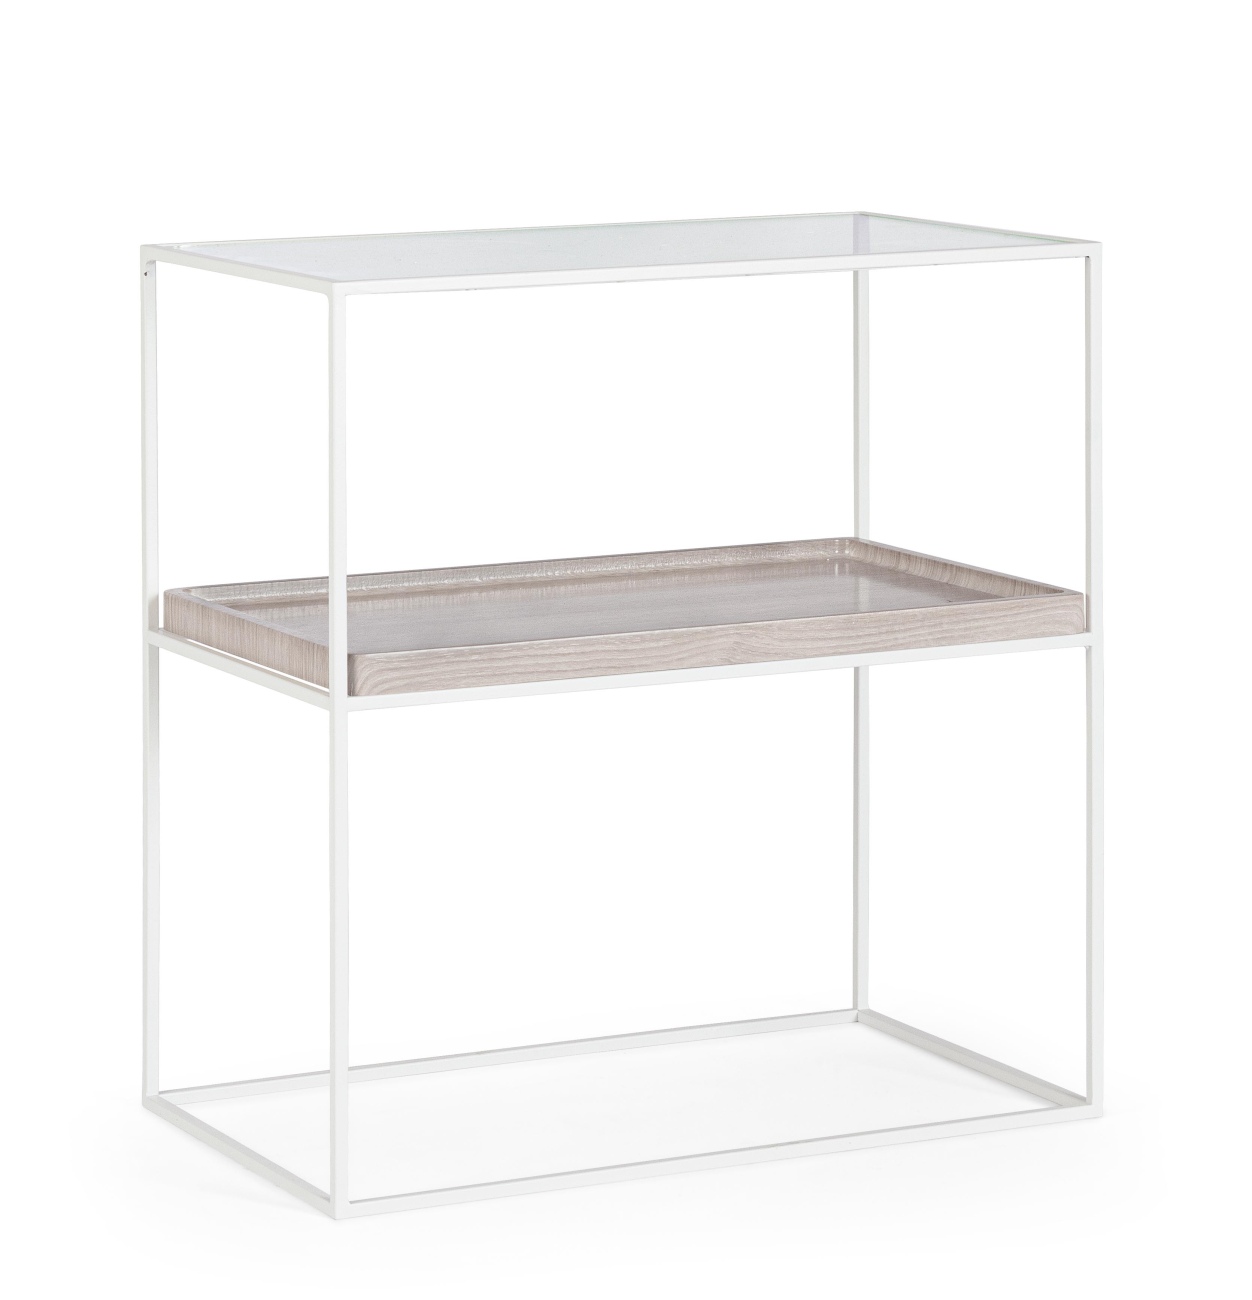 Der Nachttisch Laurel überzeugt mit seinem modernen Design. Gefertigt wurde er aus Metall, welches einen weißen Farbton besitzt. Die Tischplatte ist aus Glas. Der Nachttisch besitzt eine Breite von 55 cm.